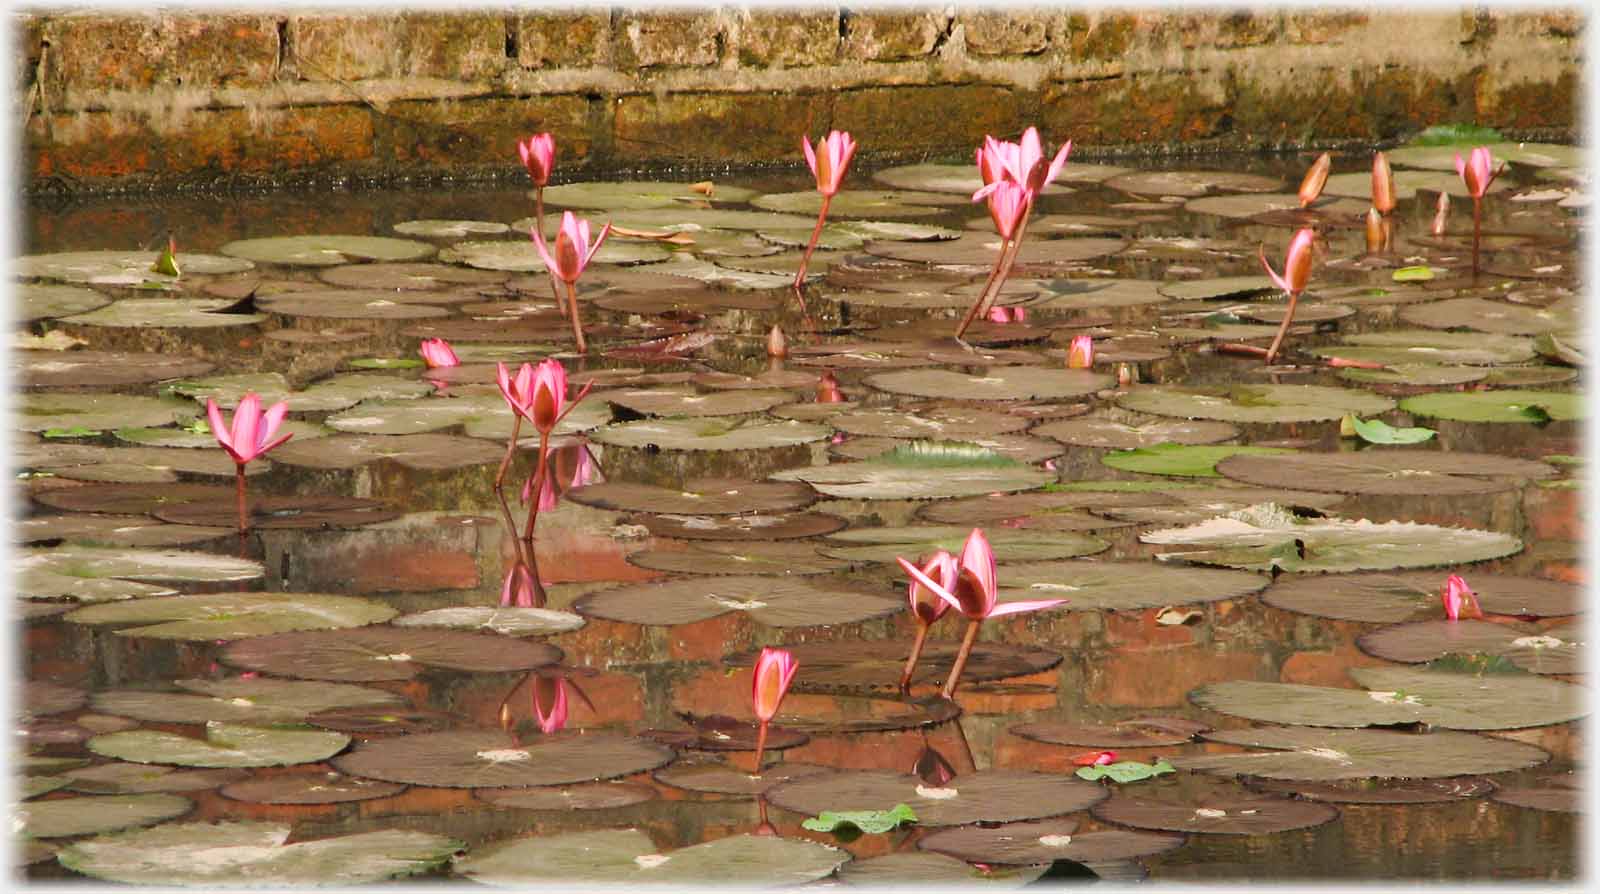 Lotus flowers and leaves in pool.